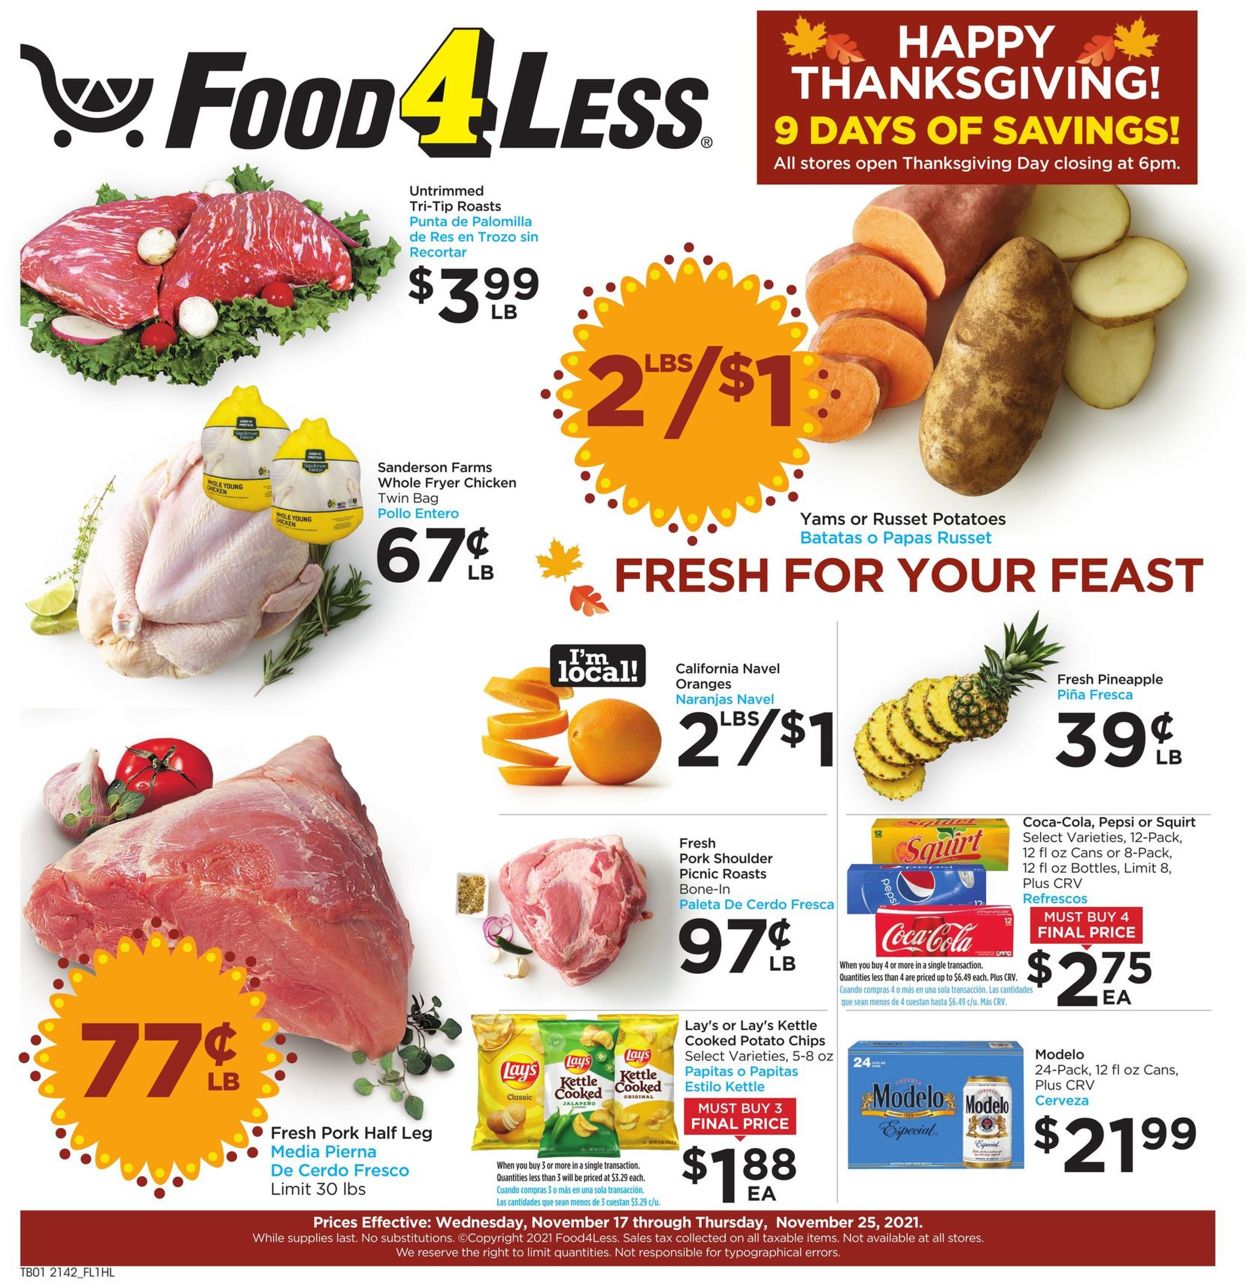 Food 4 Less THANKSGIVING 2021 Weekly Ad Circular - valid 11/17-11/25/2021